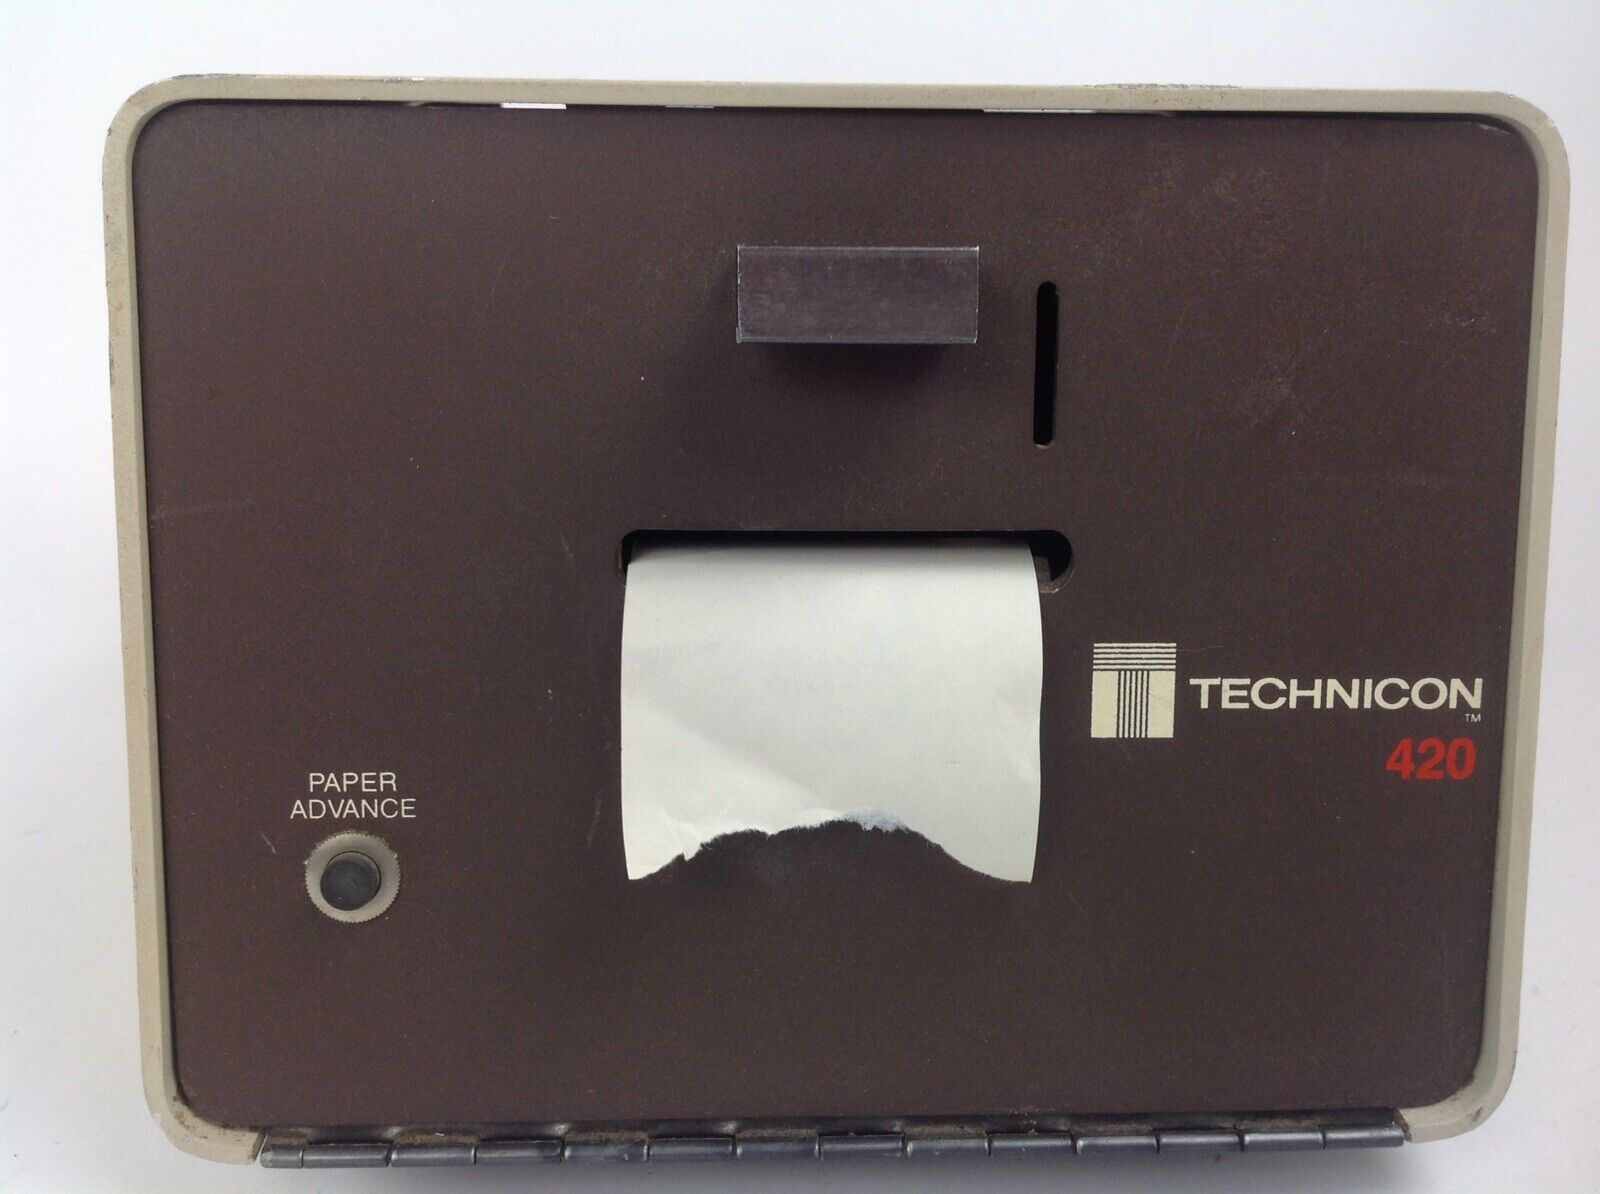 Technicon 420 Printer Technicon Instruments Corporation 053-A003-01